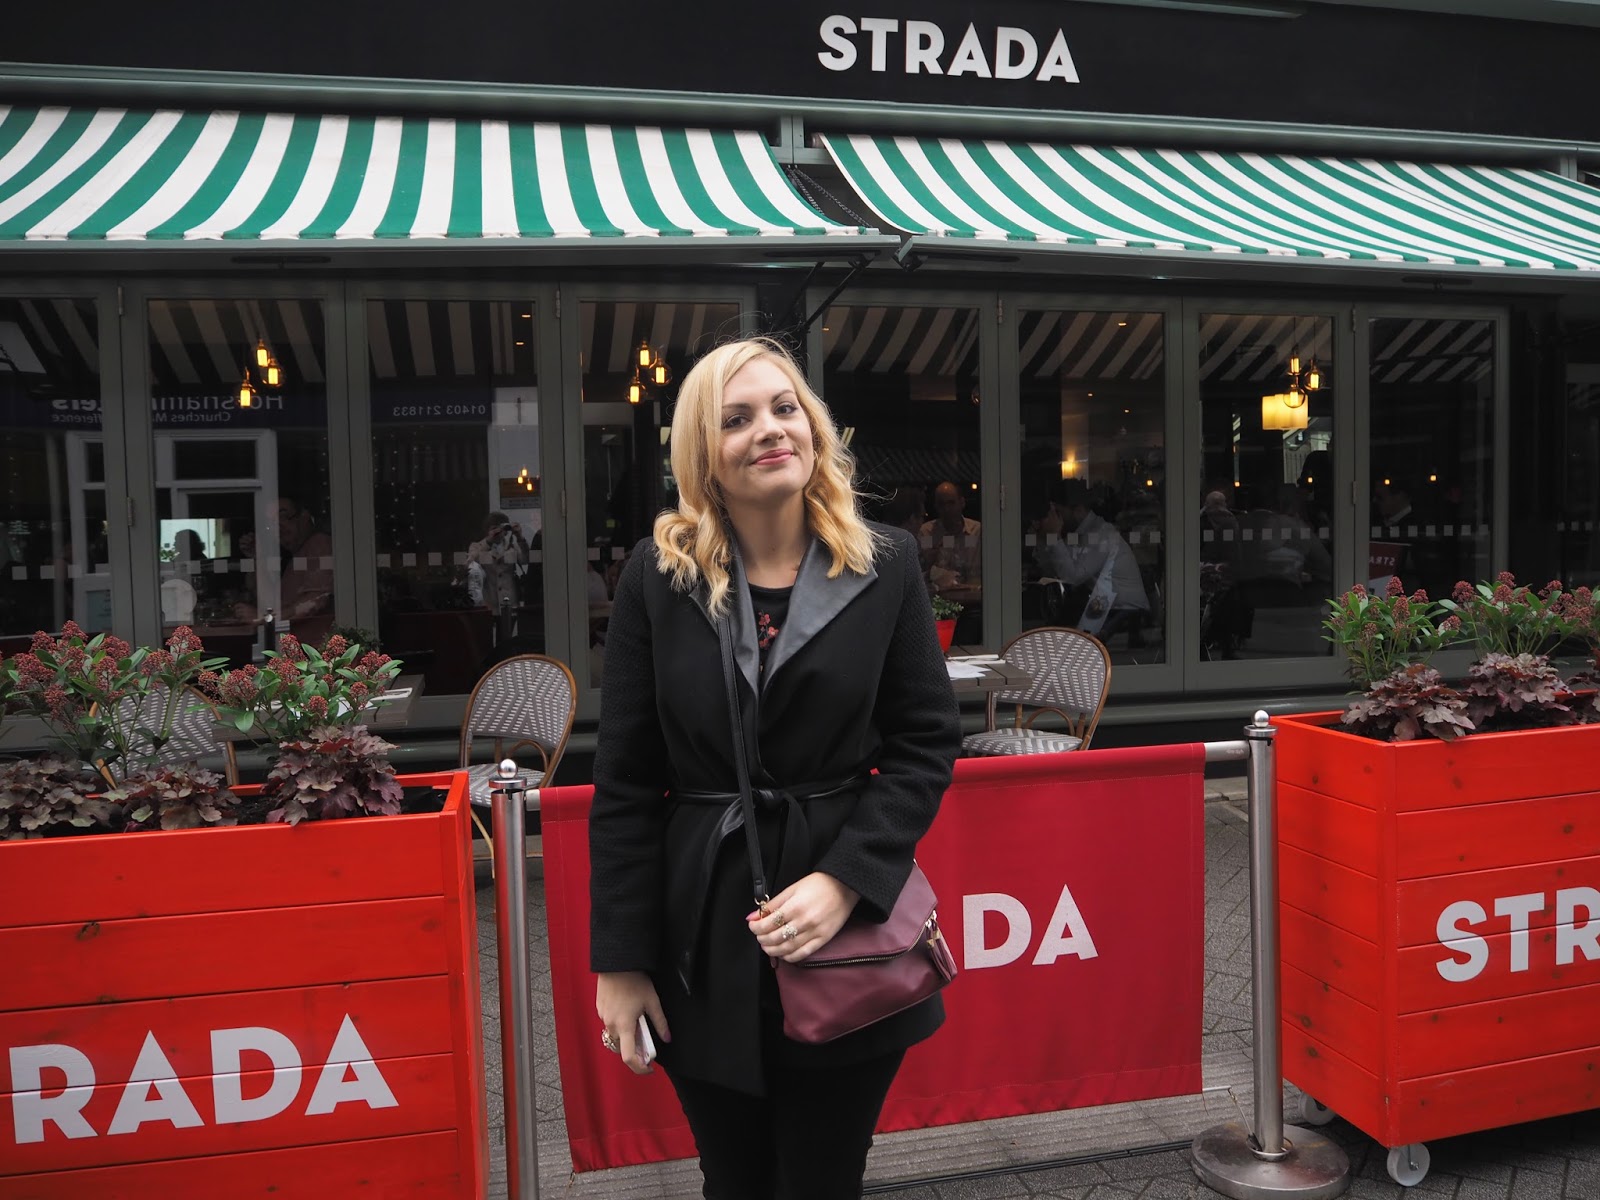 Strada Italian Restaurant, Horsham, UK Blogger, Restaurant Review, Italian Food, Food Blogger West Sussex Blogger, Katie Kirk Loves